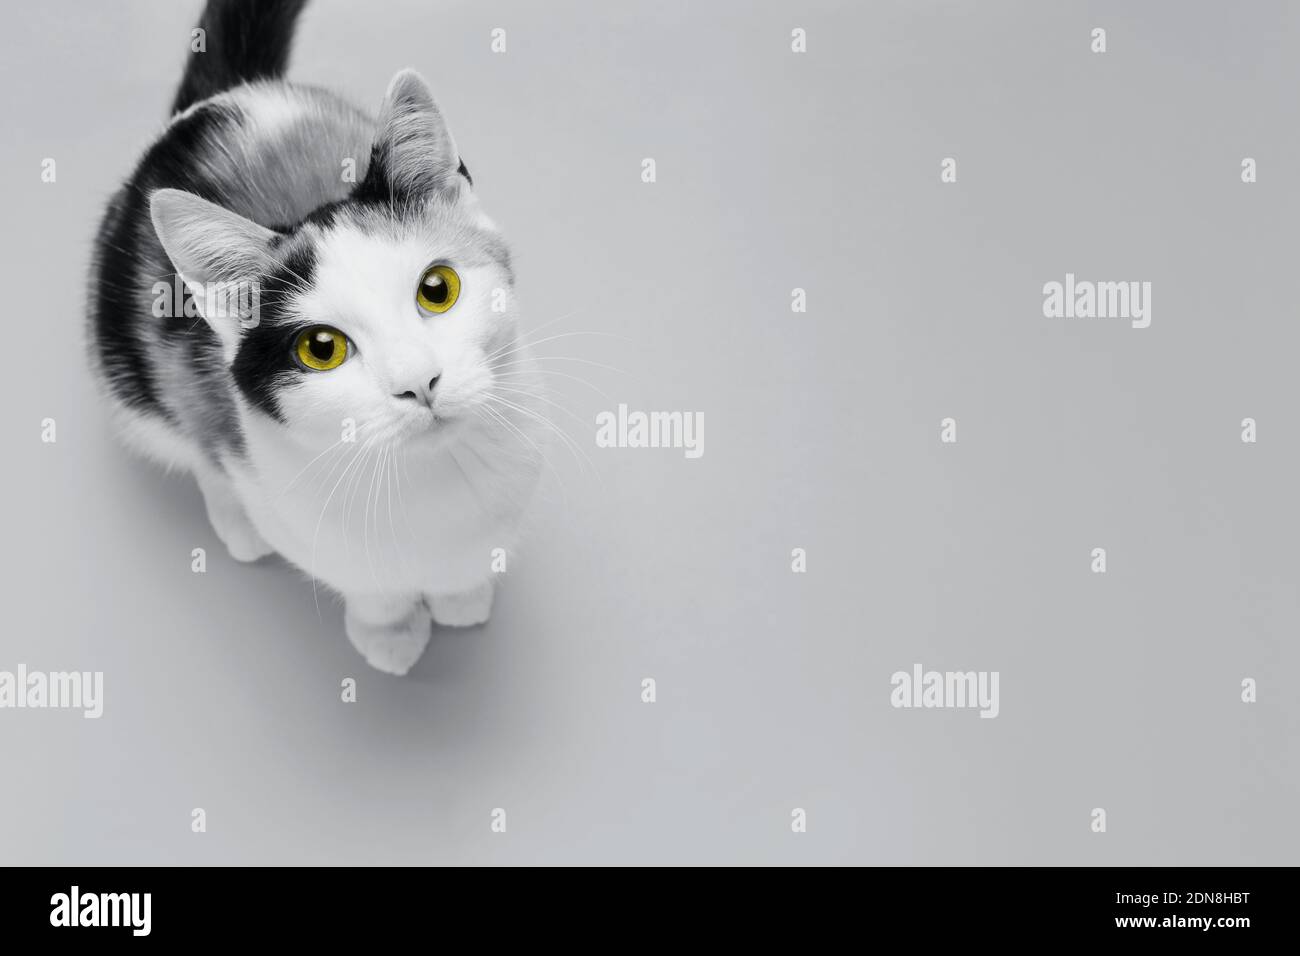 Carino gattino con occhi gialli illuminanti si siede su fondo Ultimate Grey. Design creativo che dimostra i colori dell'anno 2021 Foto Stock